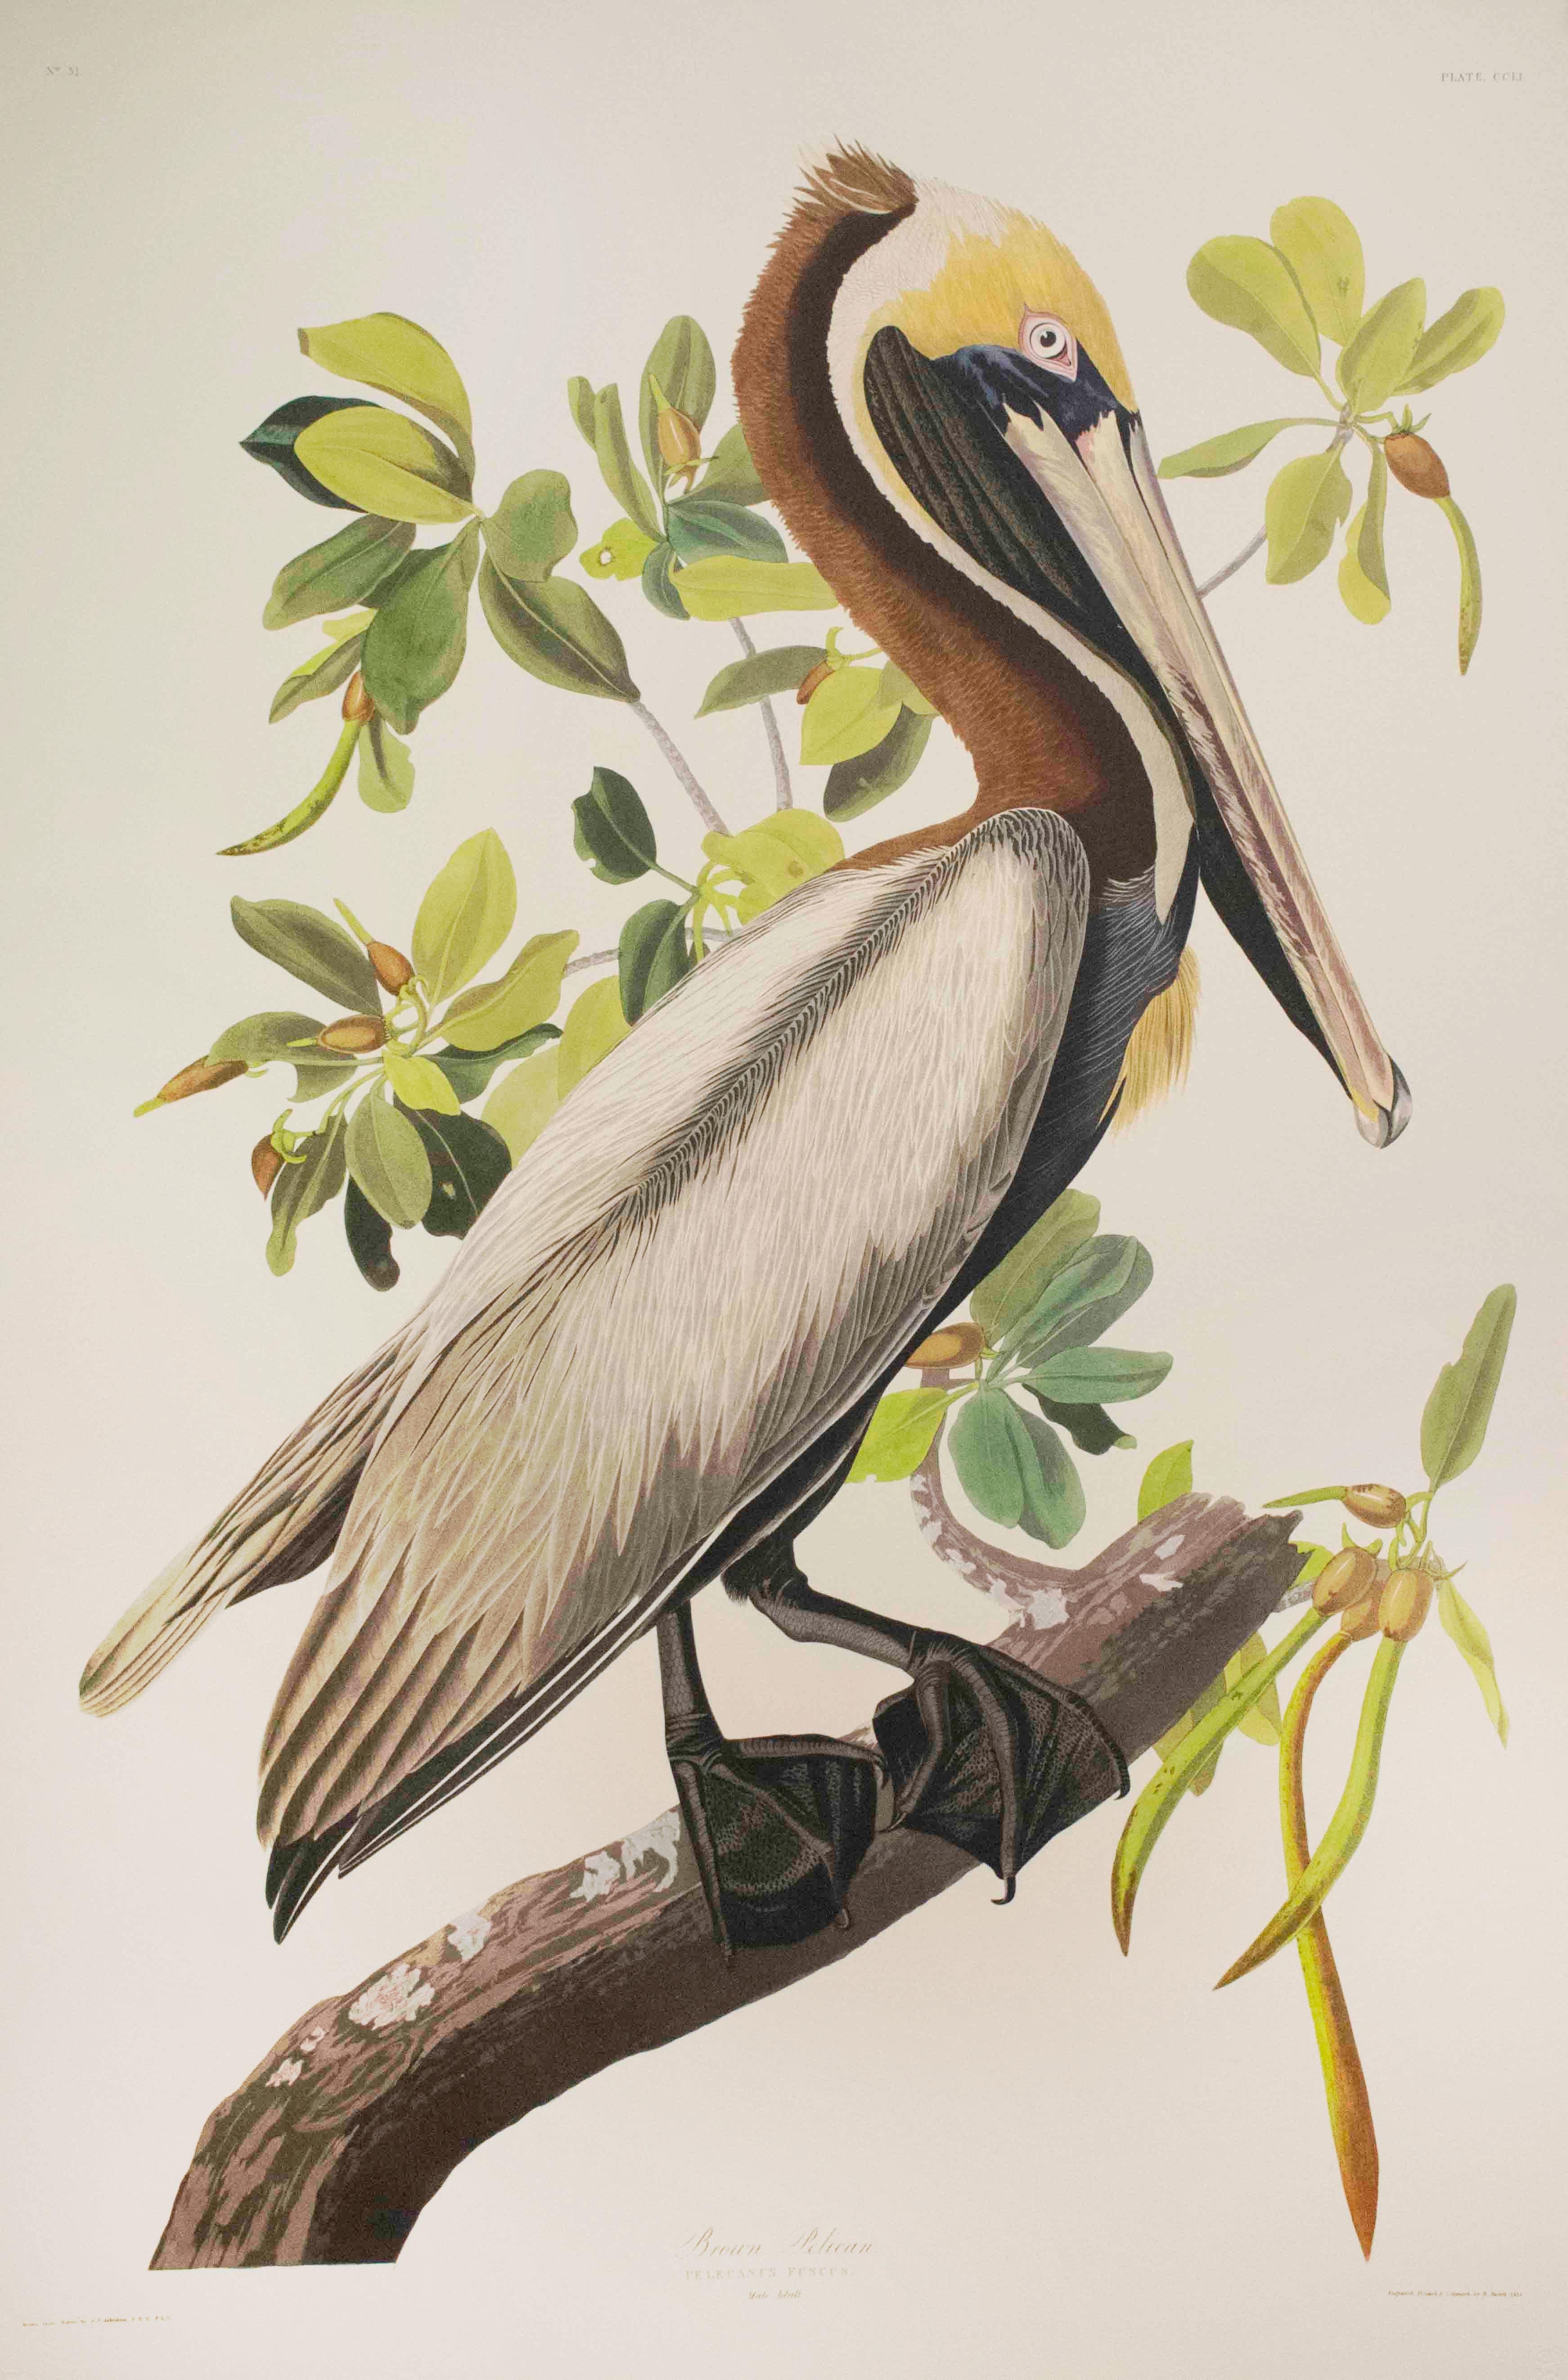 Print After John James Audubon - Pélican marron, édition Pl. 251